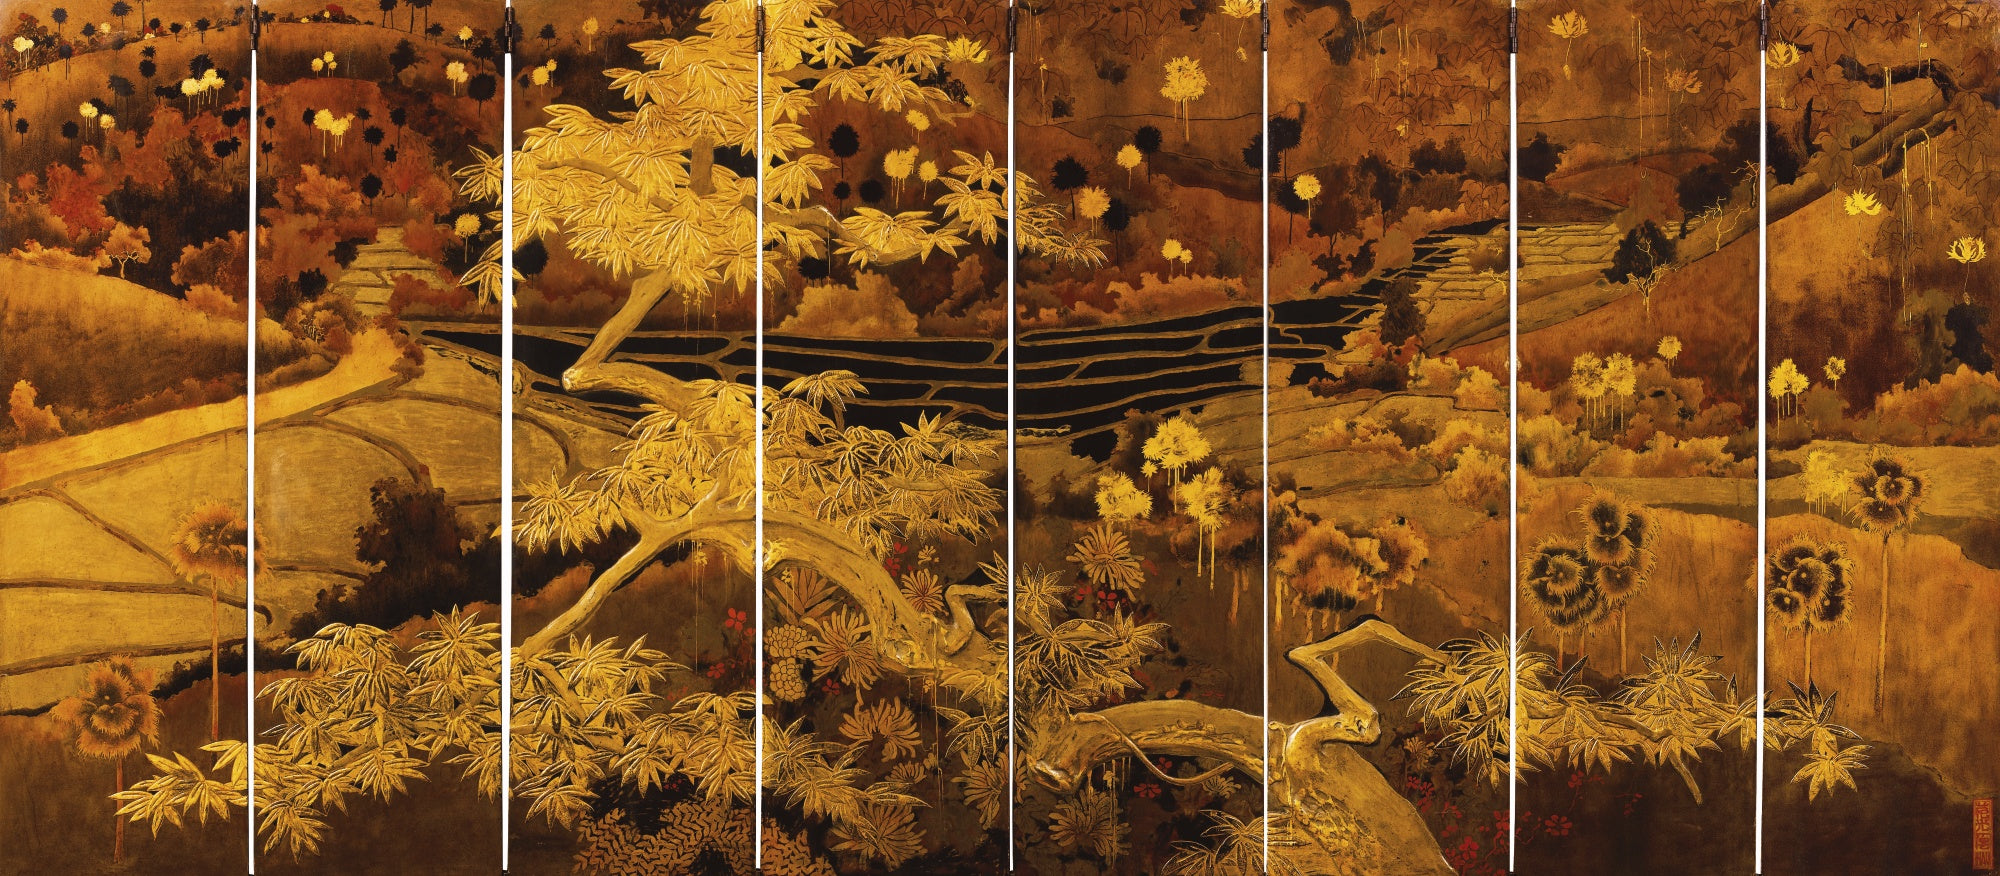 "Phong cảnh trung du Bắc Bộ", Tác giả: Phạm Hậu. 1940-1945, sơn mài trên gỗ, gồm 8 tấm, kích thước mỗi tấm 124,5cm x 33cm (Ảnh: artmarketmonitor.com)